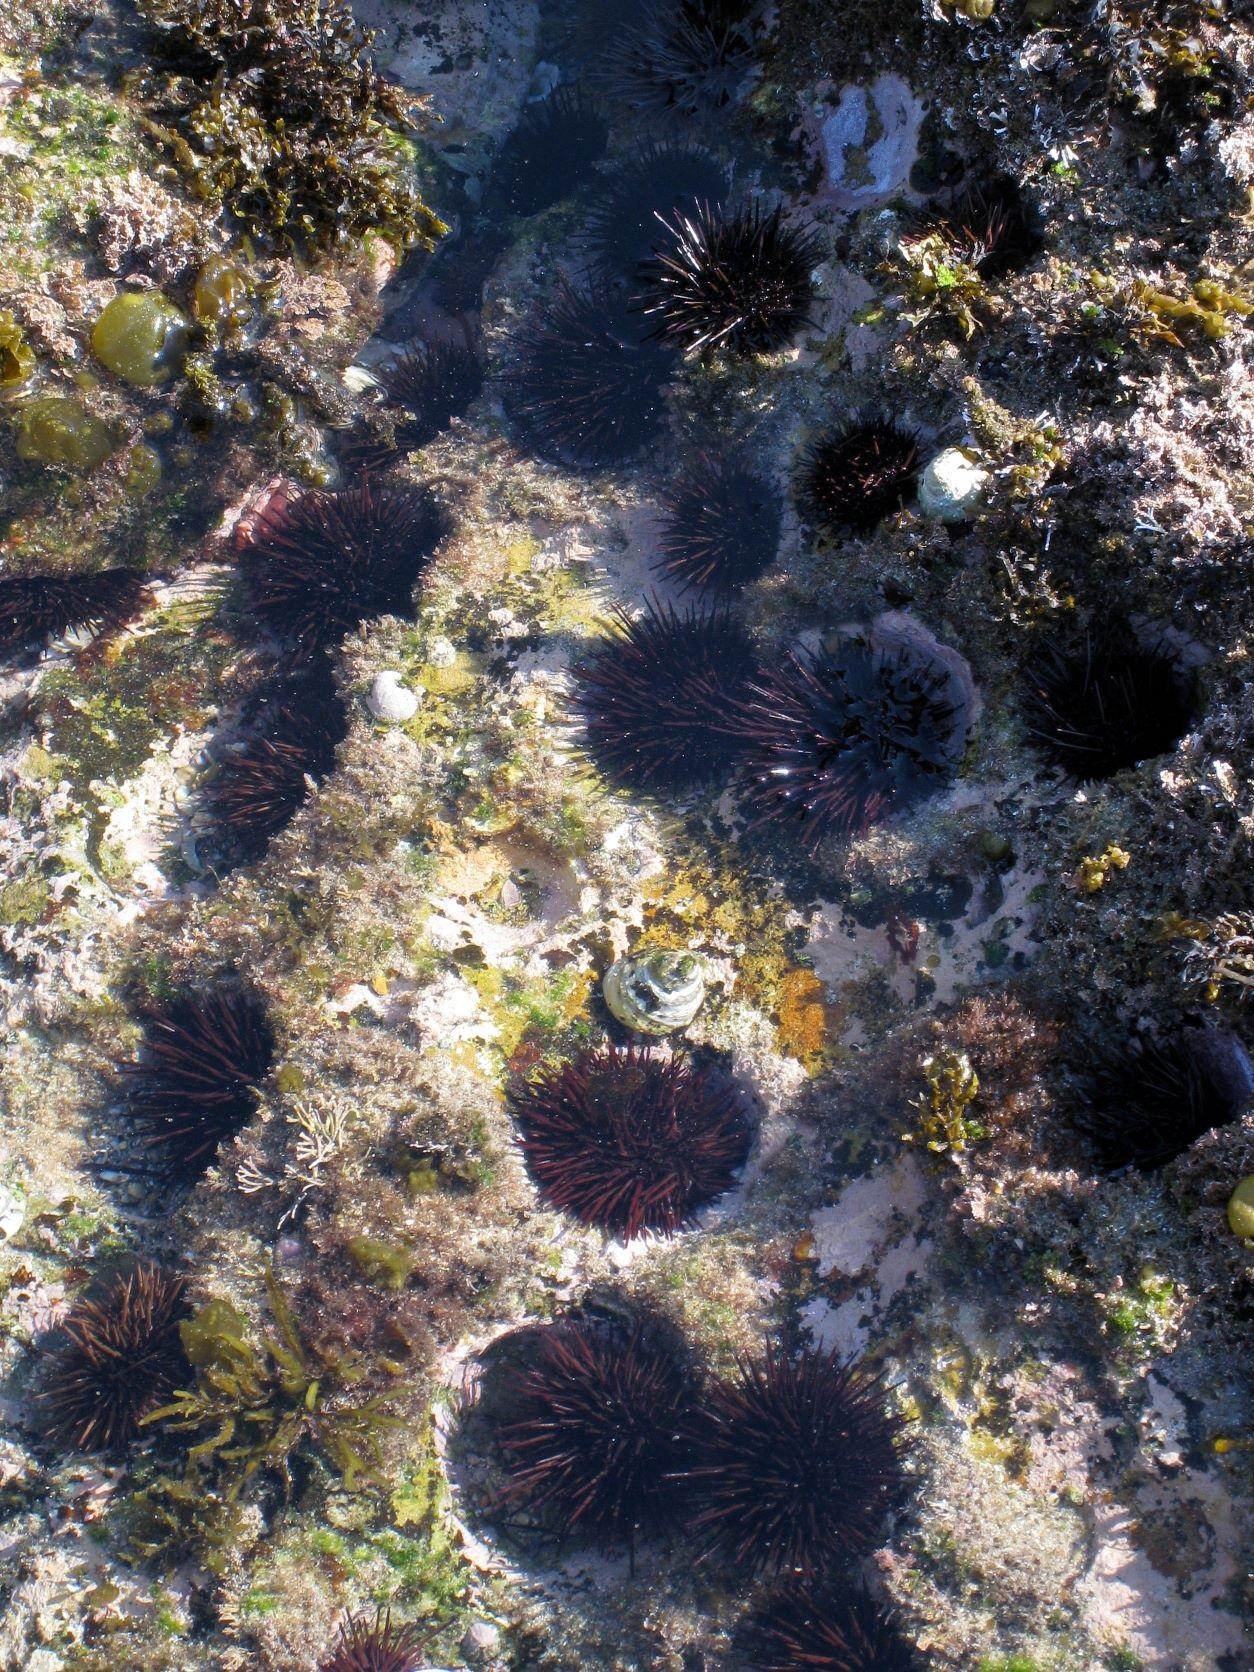 海膽對維持海洋生態系統的功能擔當着重要角色，然而氣候變化令海洋熱浪的出現更為頻繁，威脅海膽族群的生存。圖中為澳洲悉尼的海膽族群。